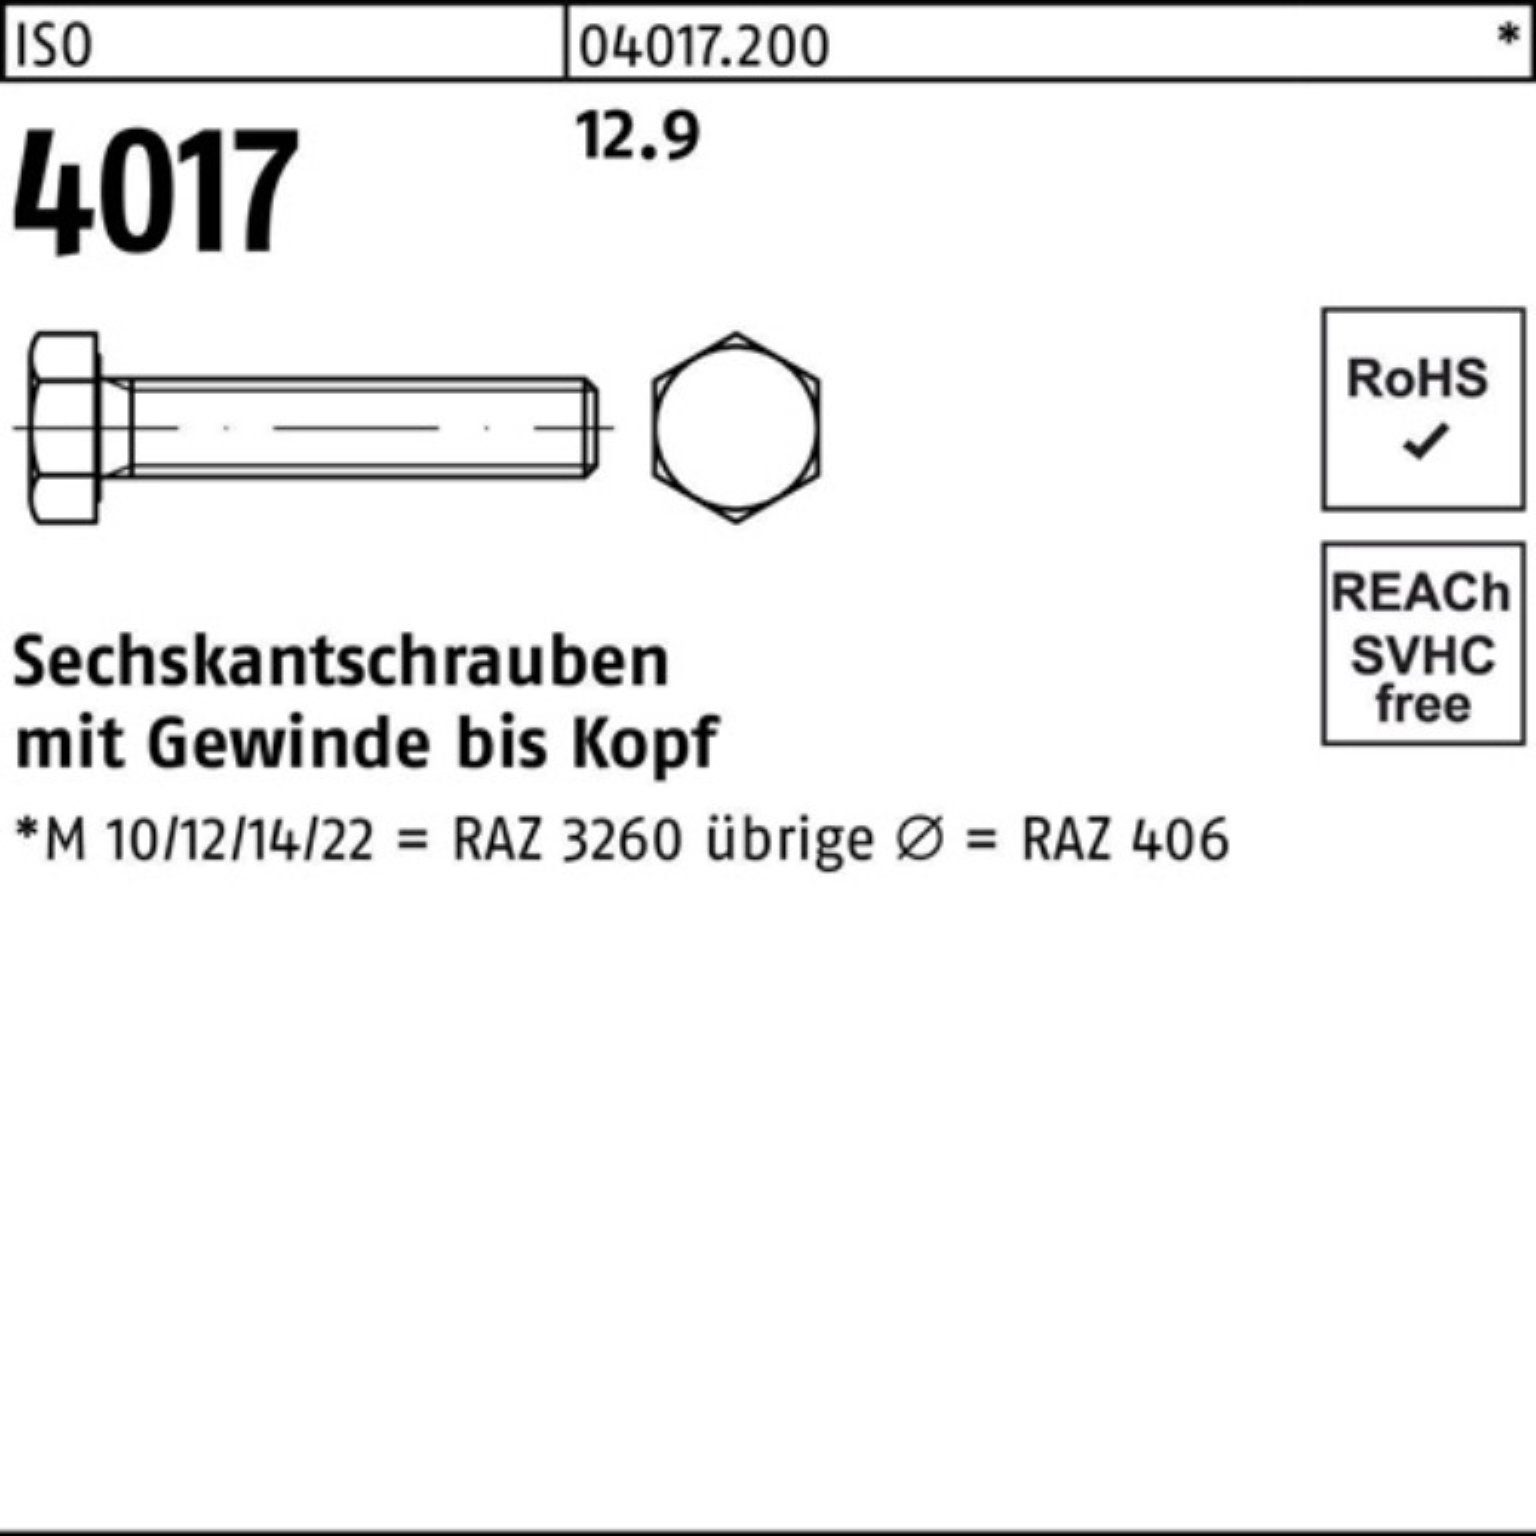 Kostenloser Online- und Ladenverkauf. Bufab Sechskantschraube 100er Pack Sechskantschraube 100 Stück 12.9 35 4017 4 ISO VG ISO M14x